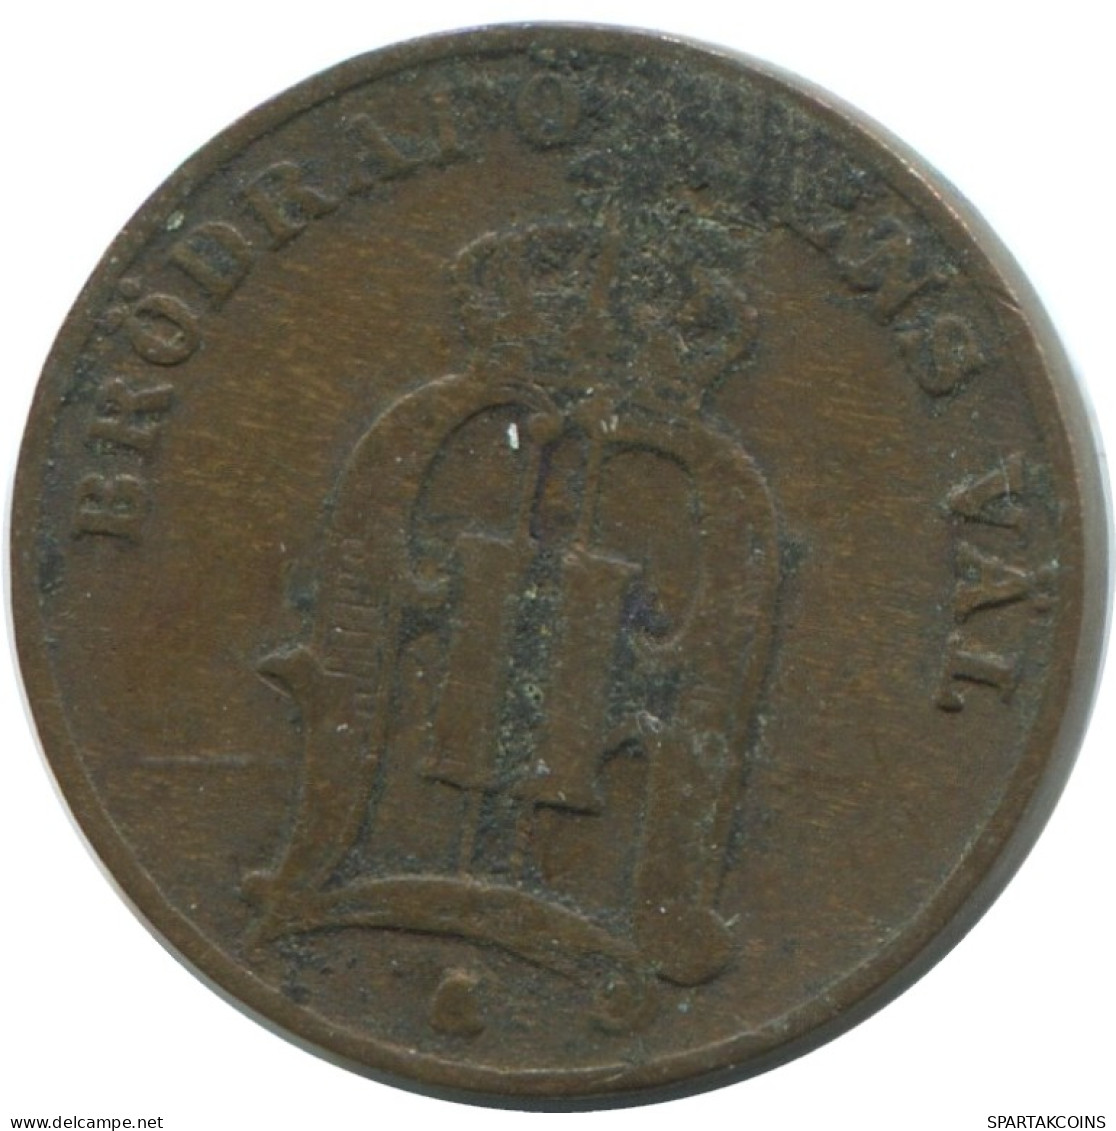 1 ORE 1891 SUECIA SWEDEN Moneda #AD412.2.E.A - Sweden